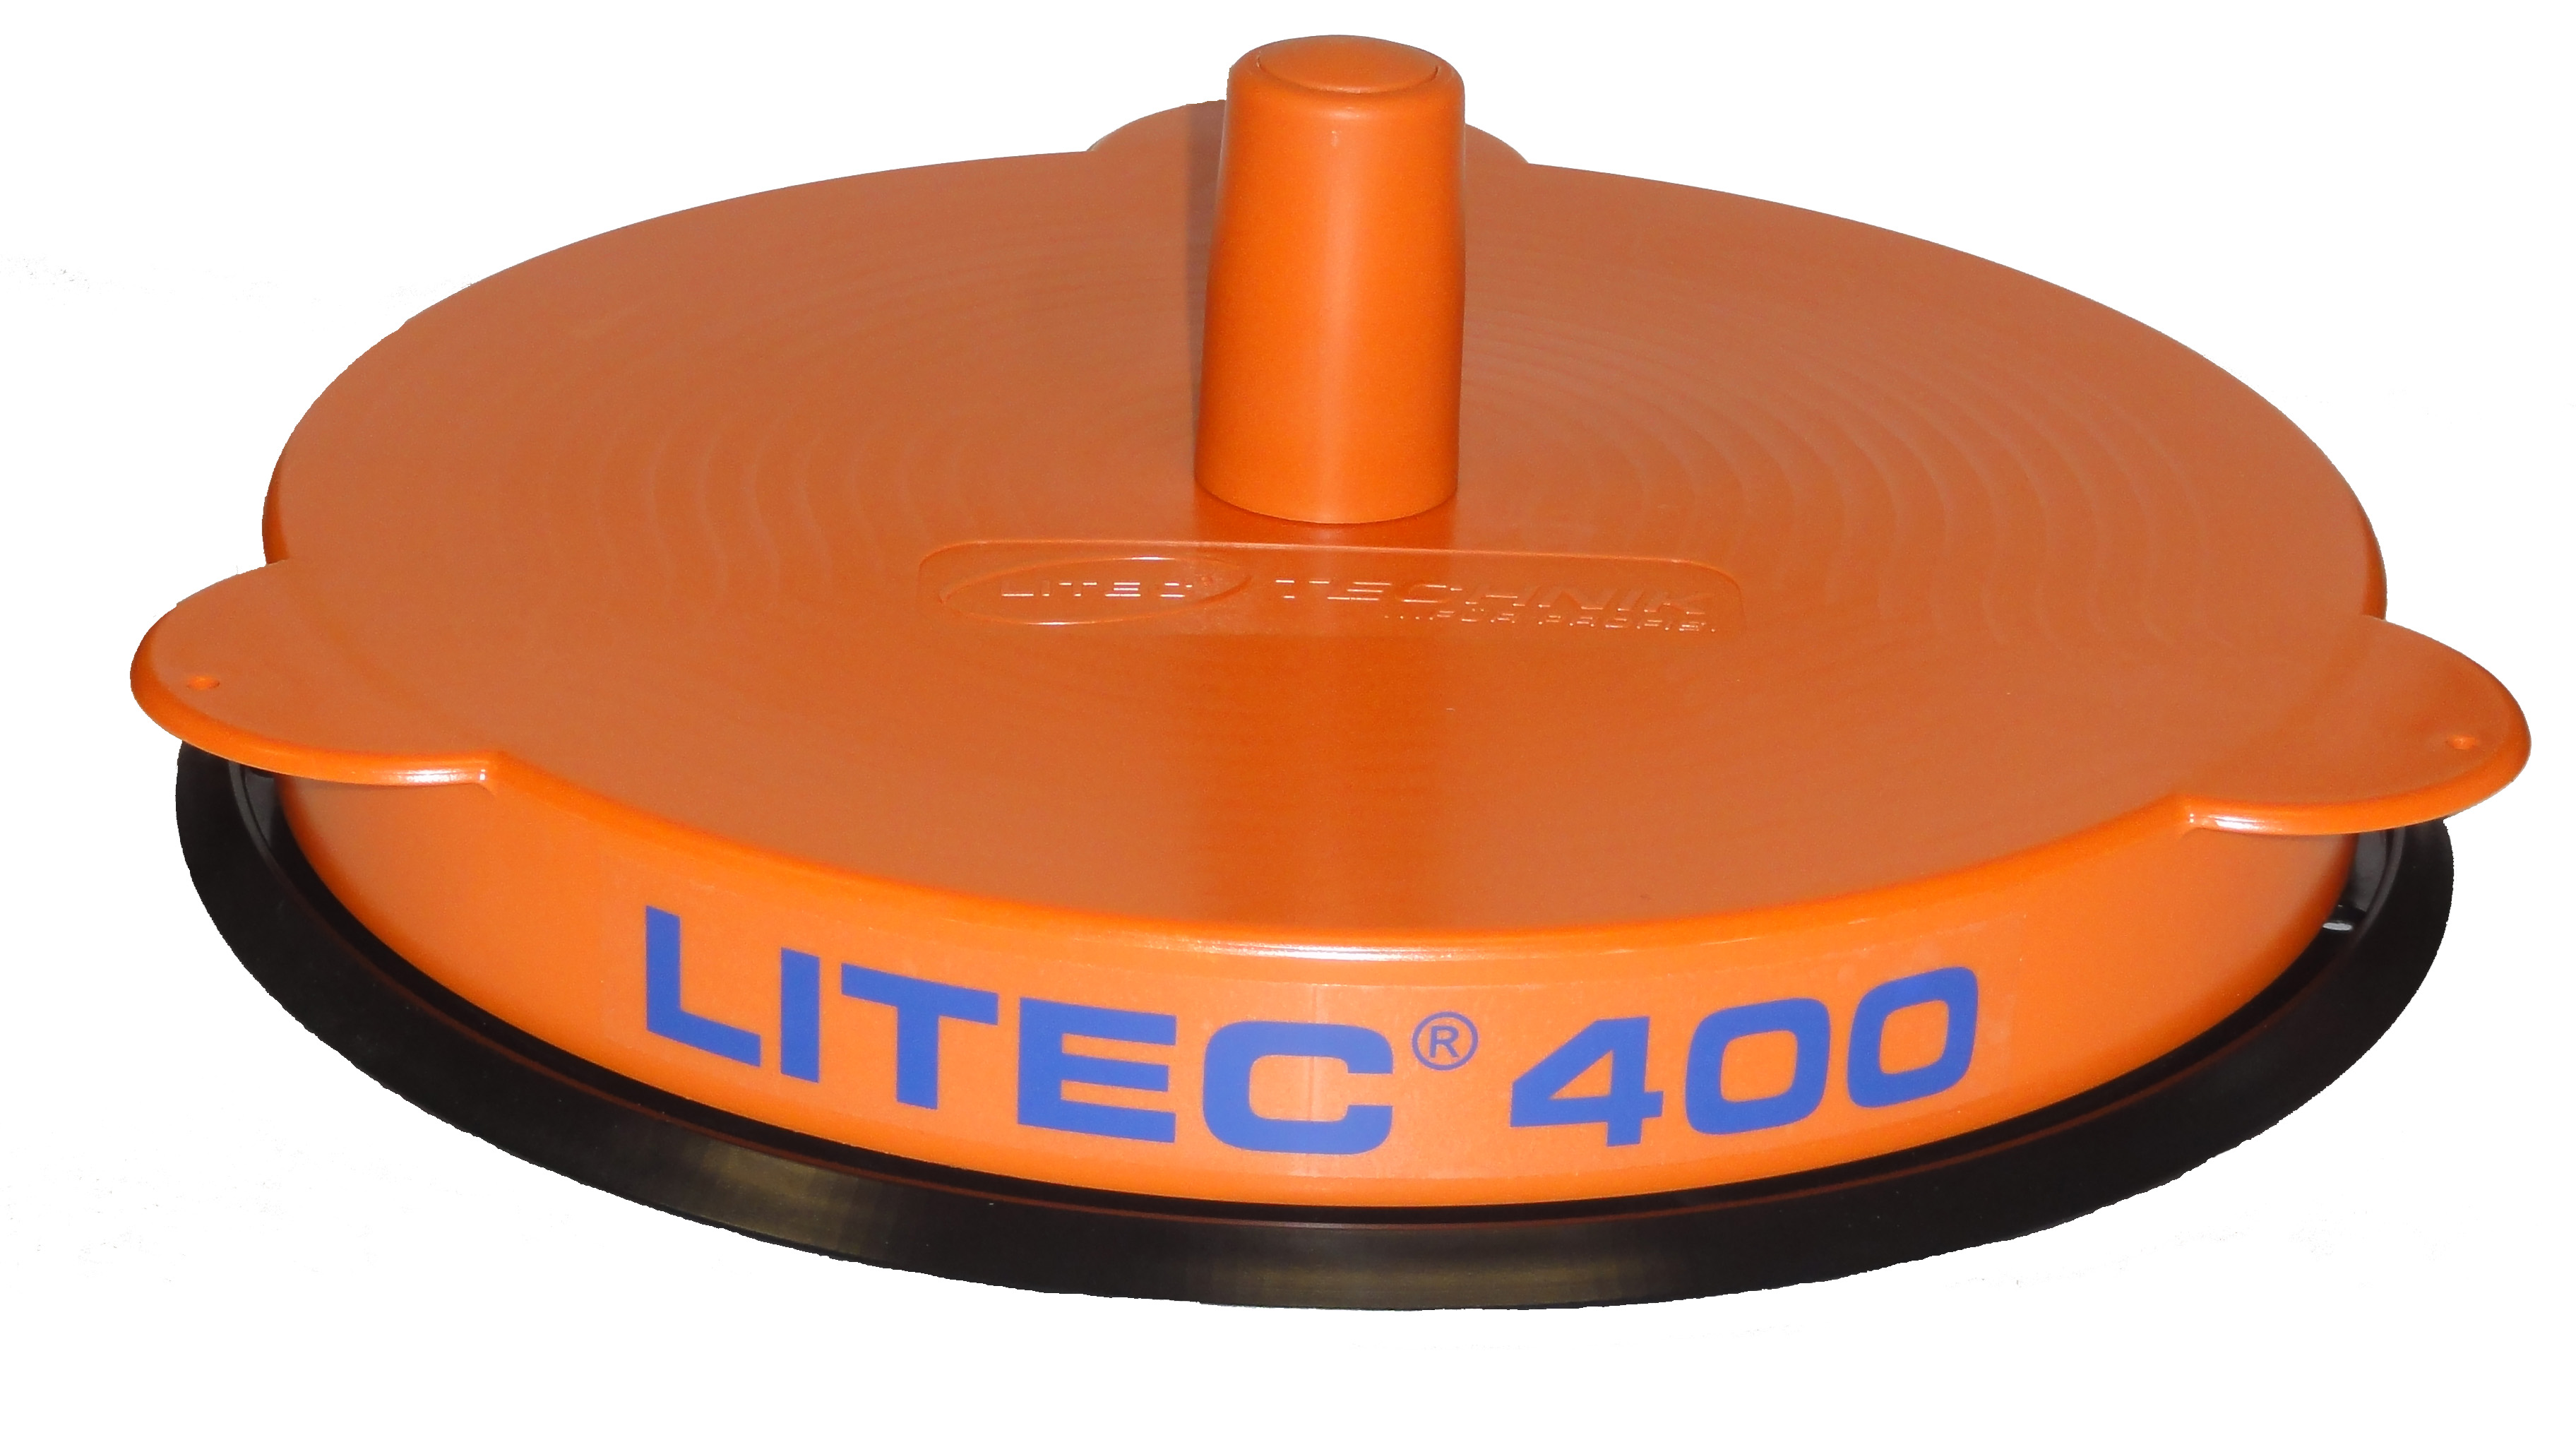 LITEC 400